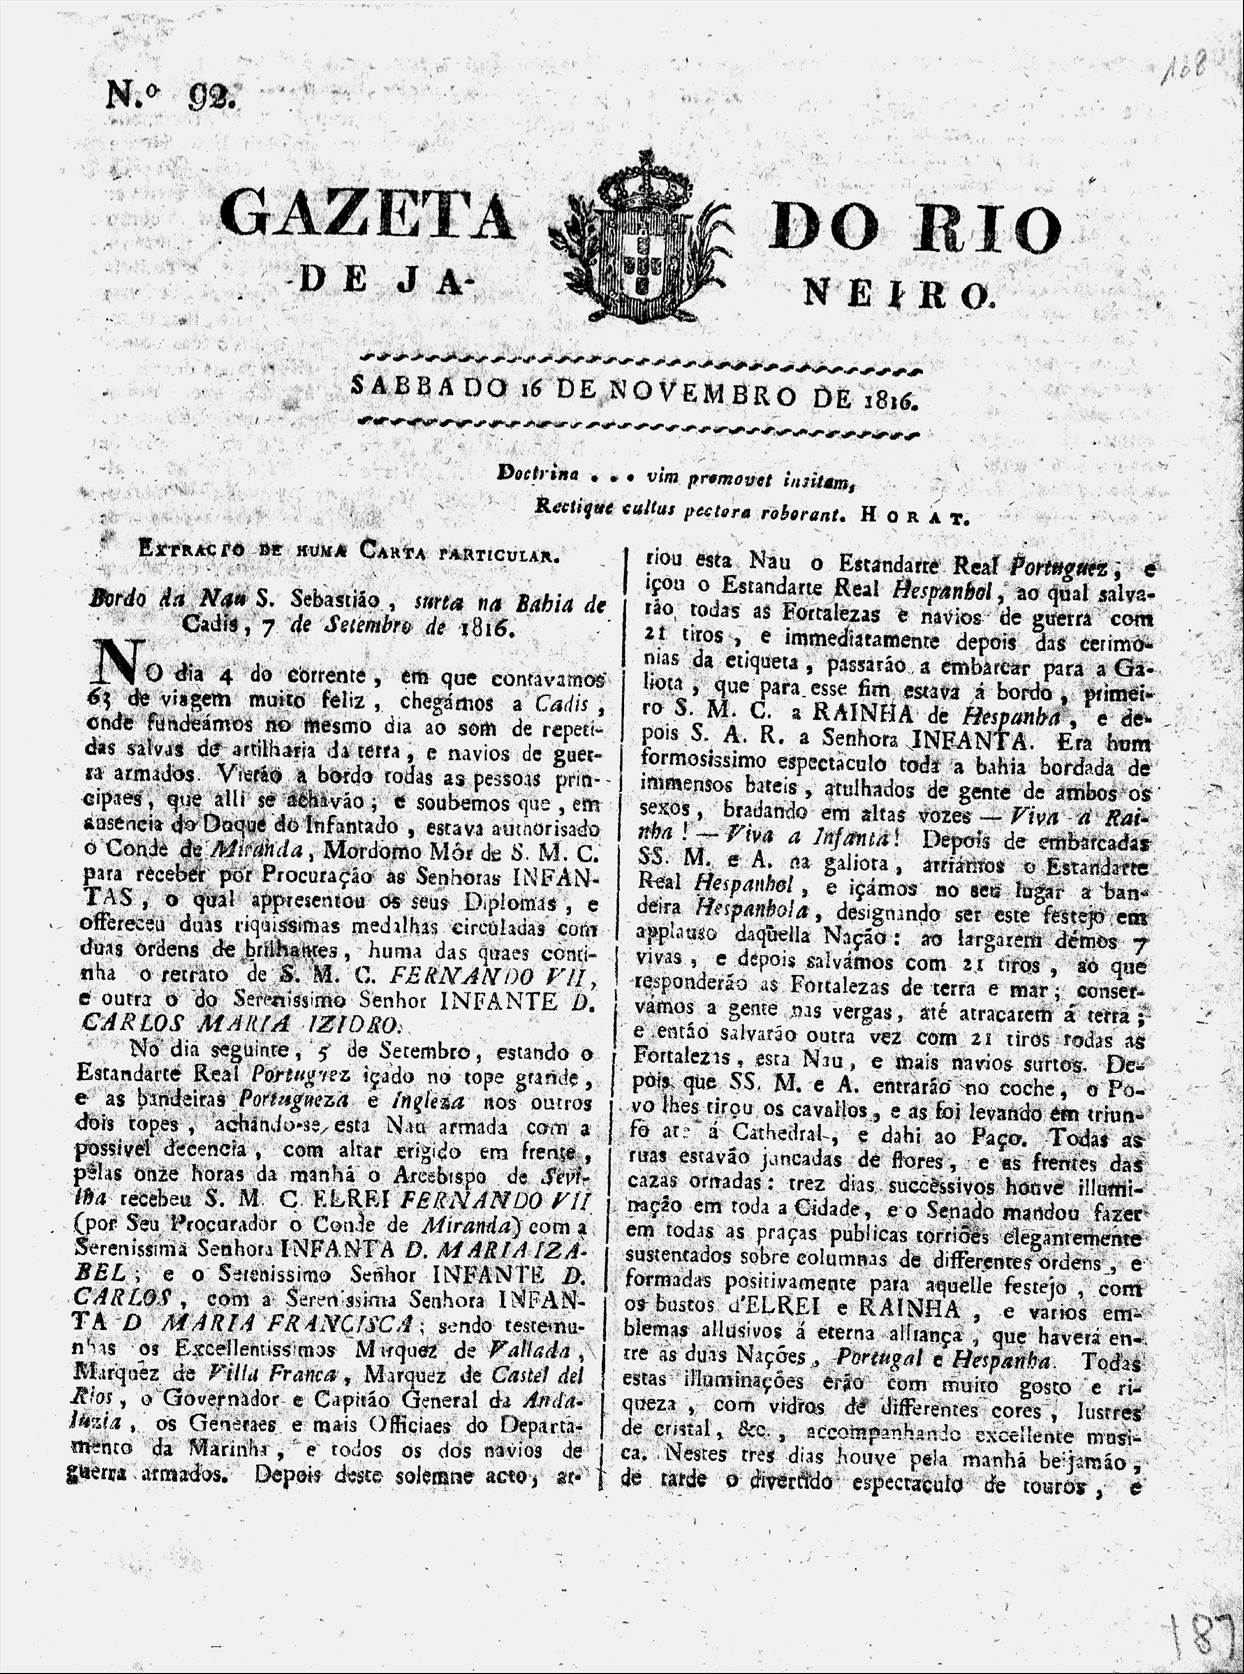 Gazeta do Rio de Janeiro, edição de 16 de novembro de 1816 (frente e verso)